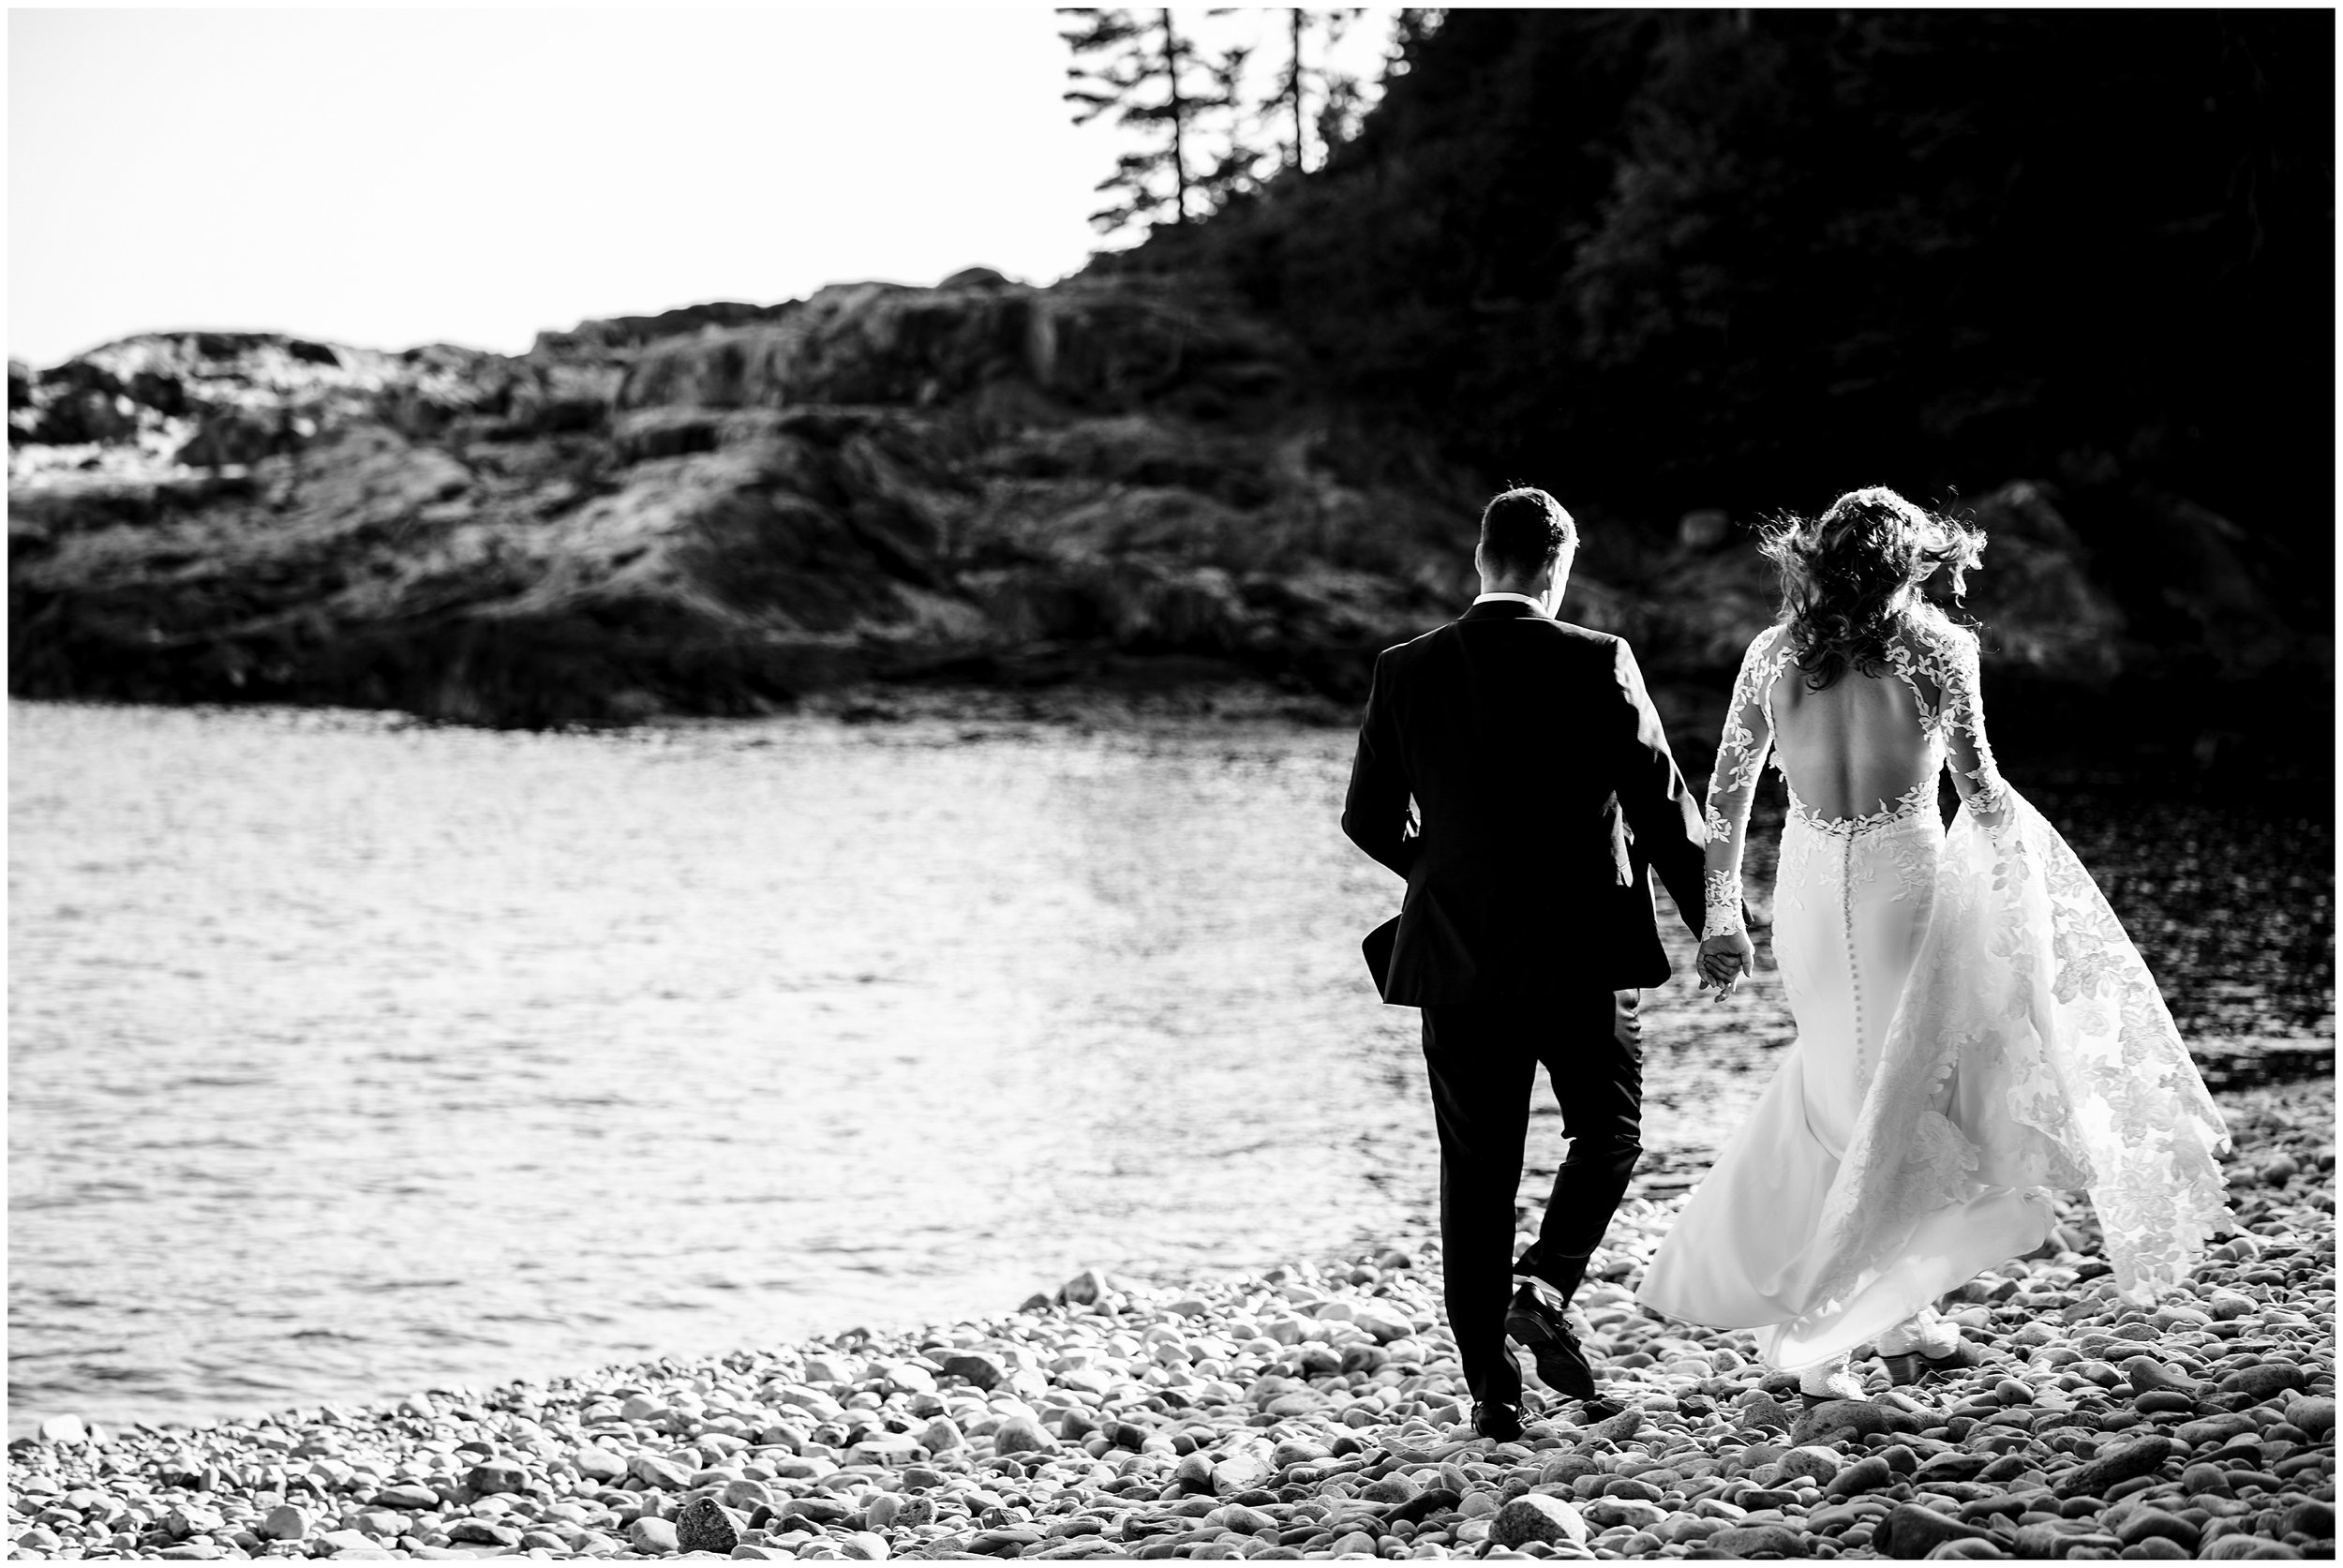 Acadia National Park Wedding Photographers, Bar Harbor Wedding Photographers, Two Adventurous Souls- 082423_0046.jpg